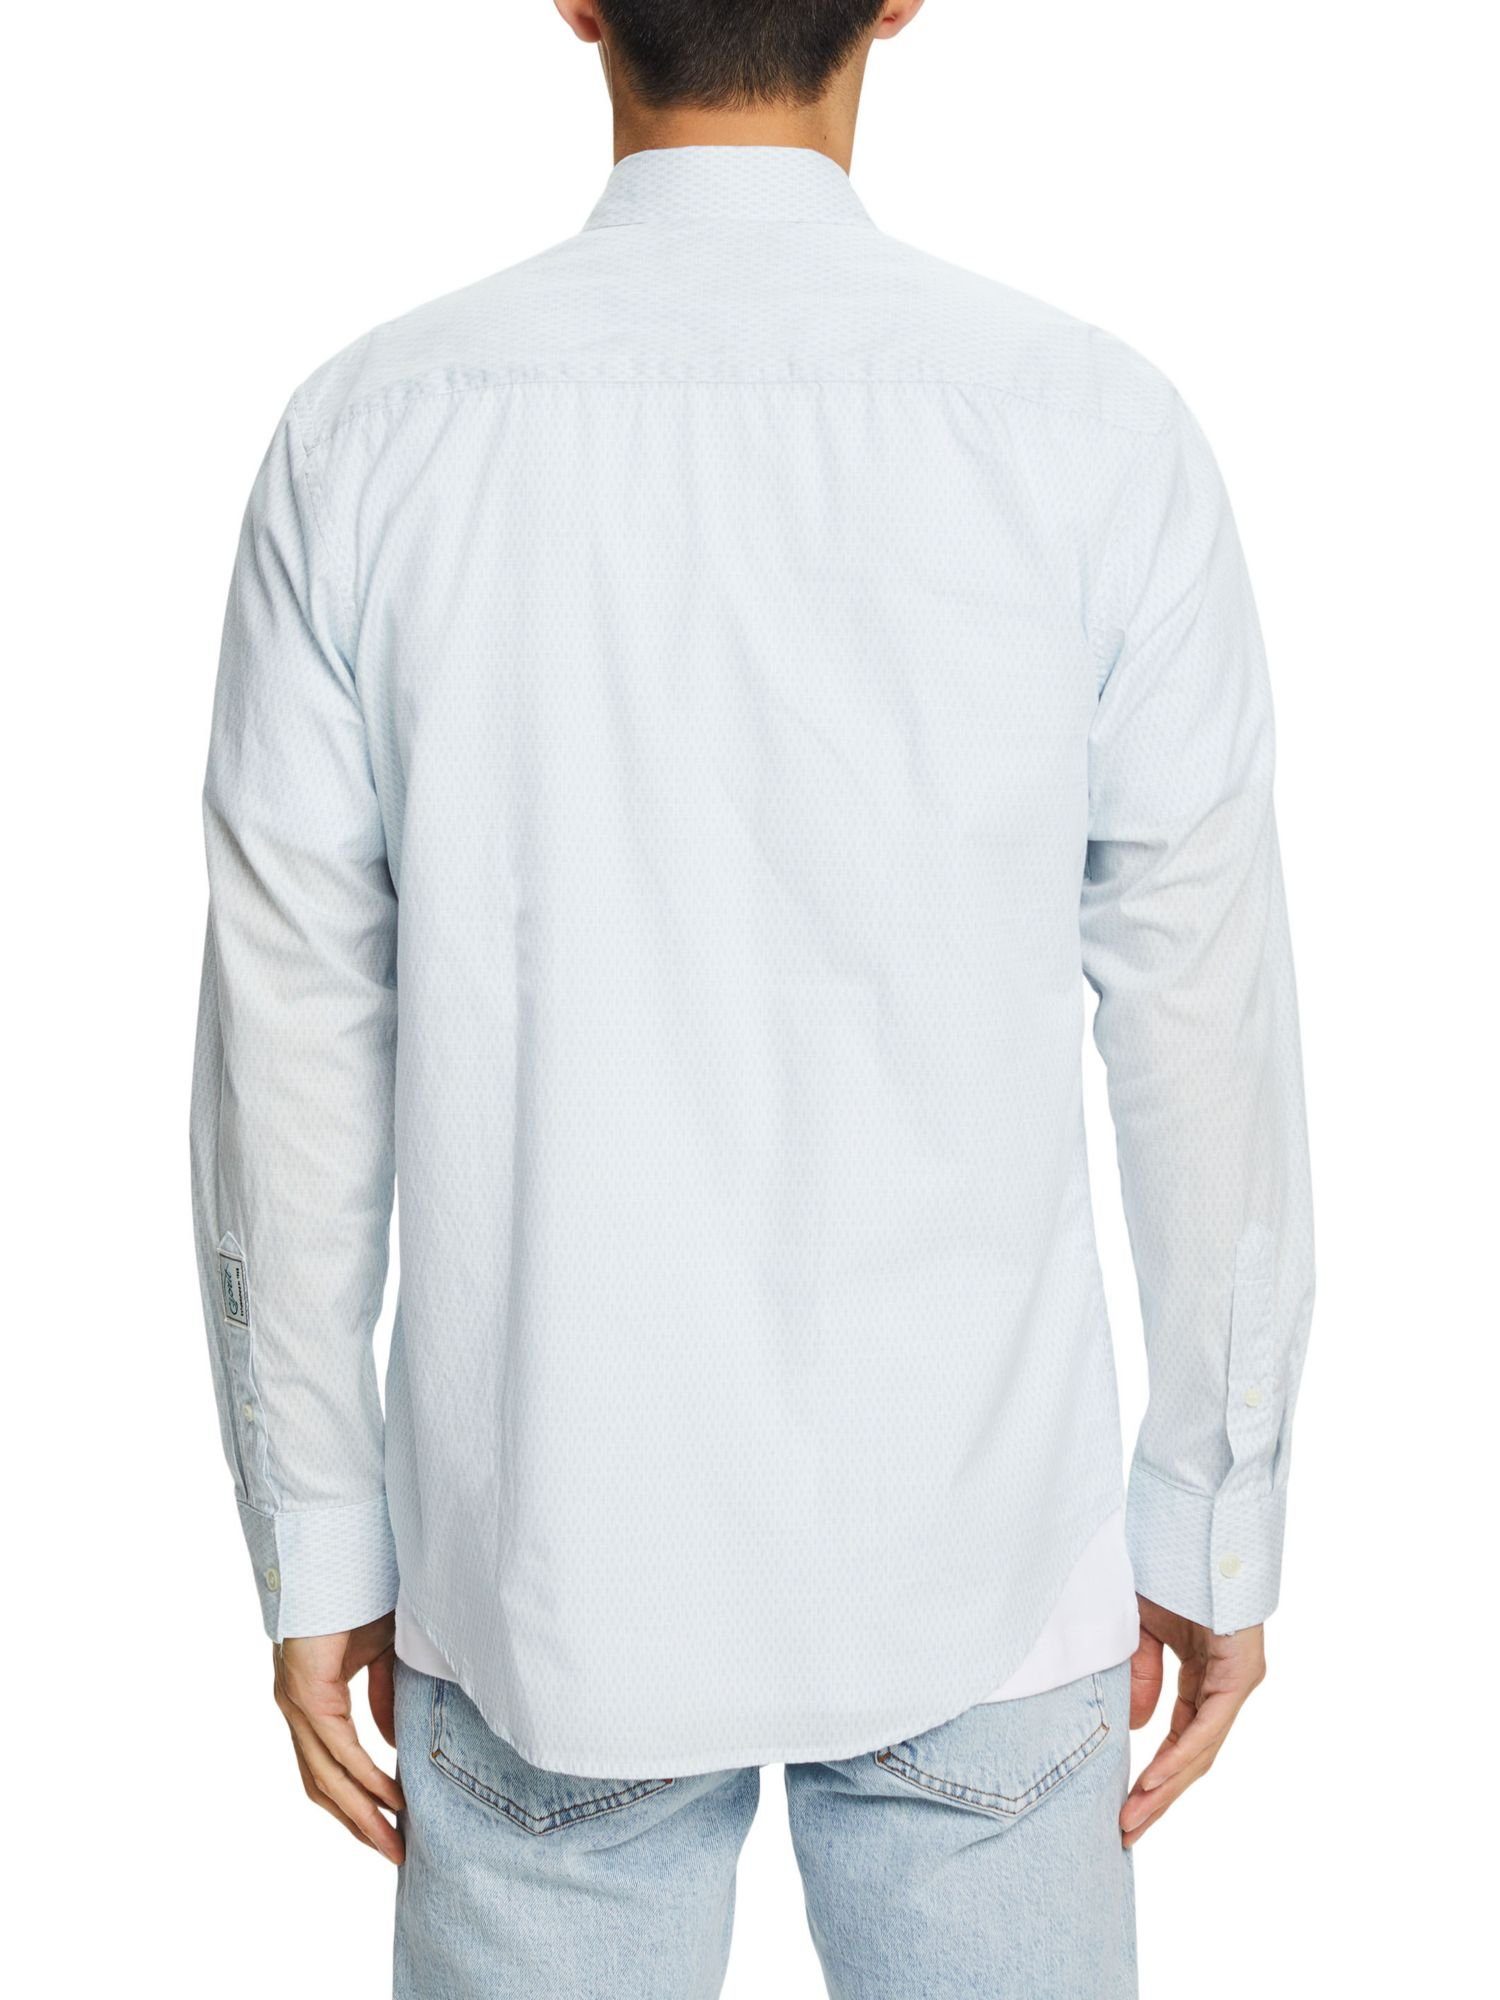 Businesshemd Passform Esprit in Collection Print mit WHITE bequemer Baumwollhemd